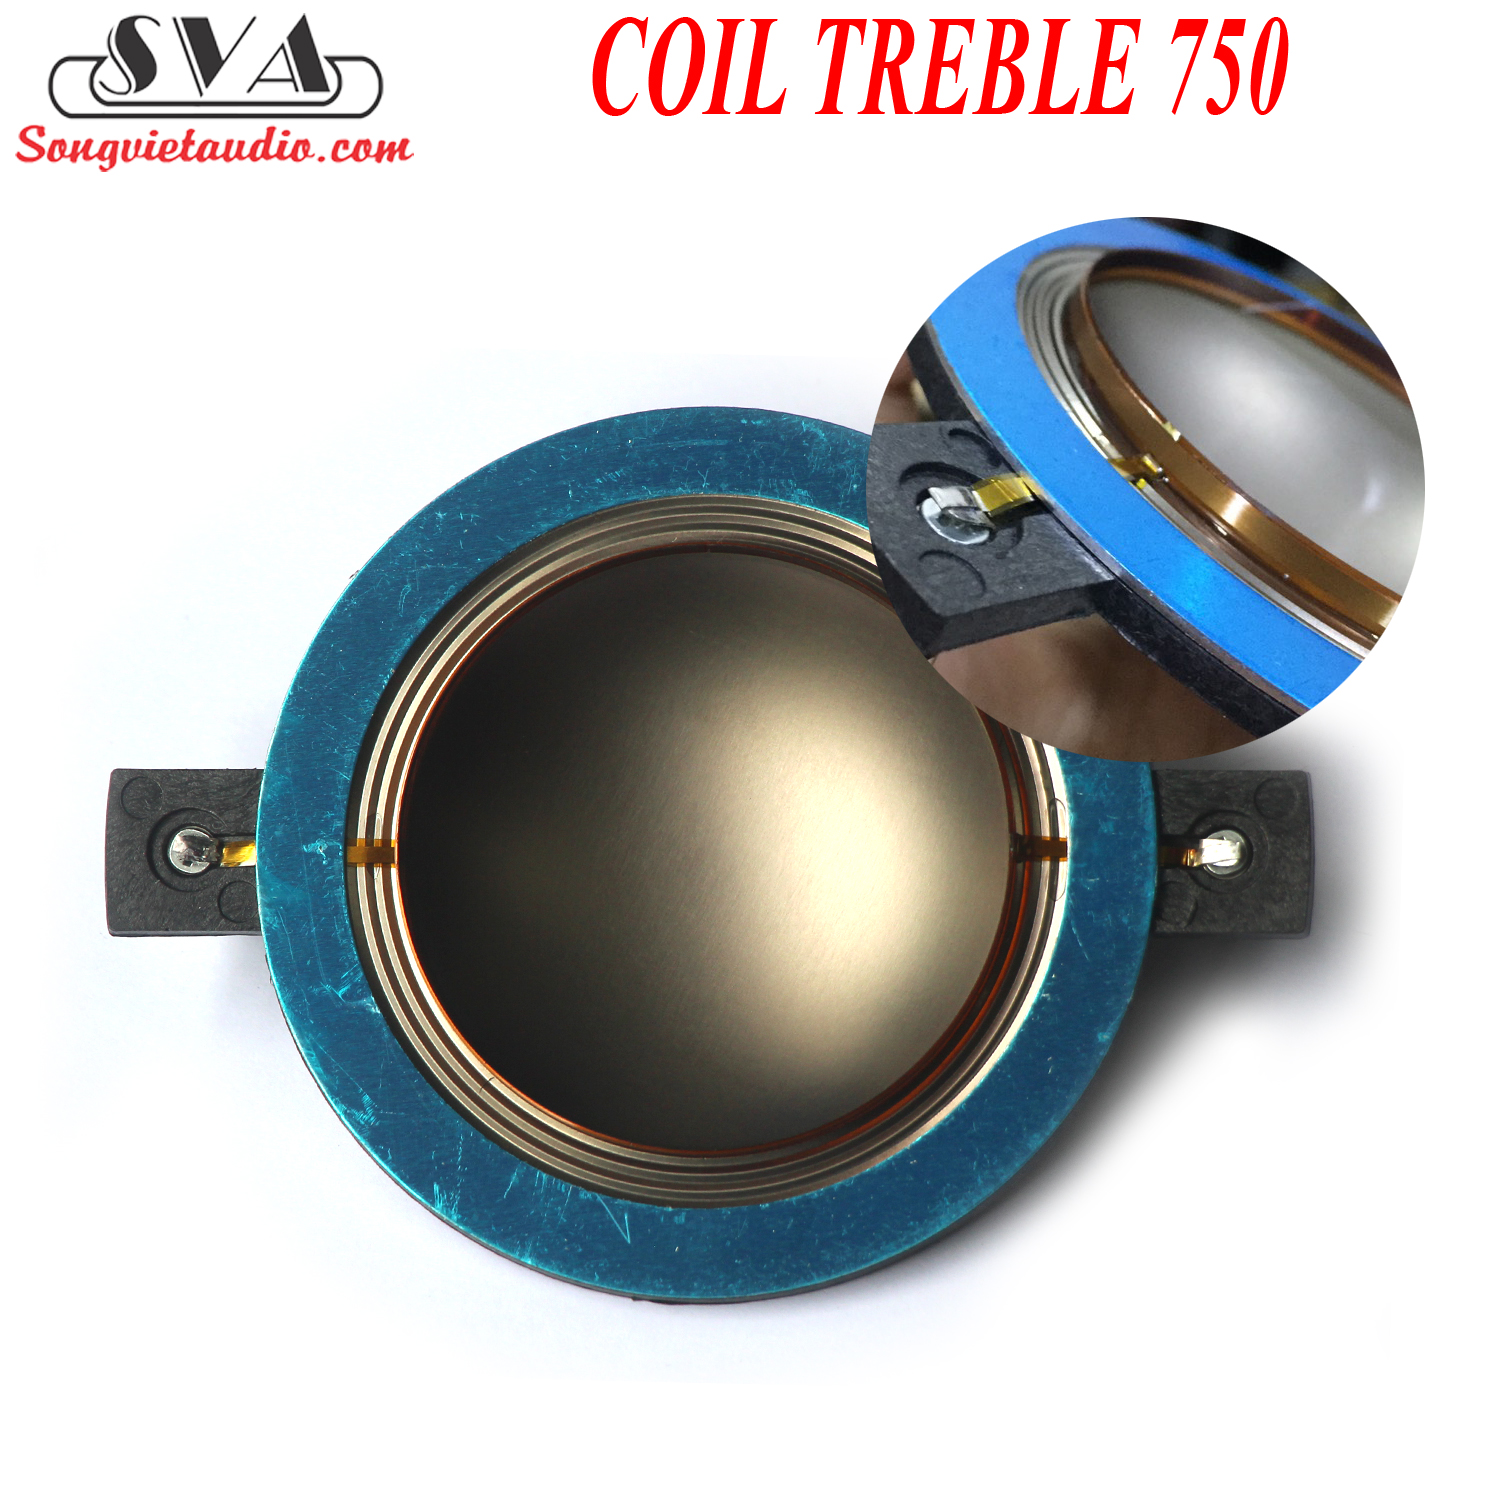 COIL TREBLE 750